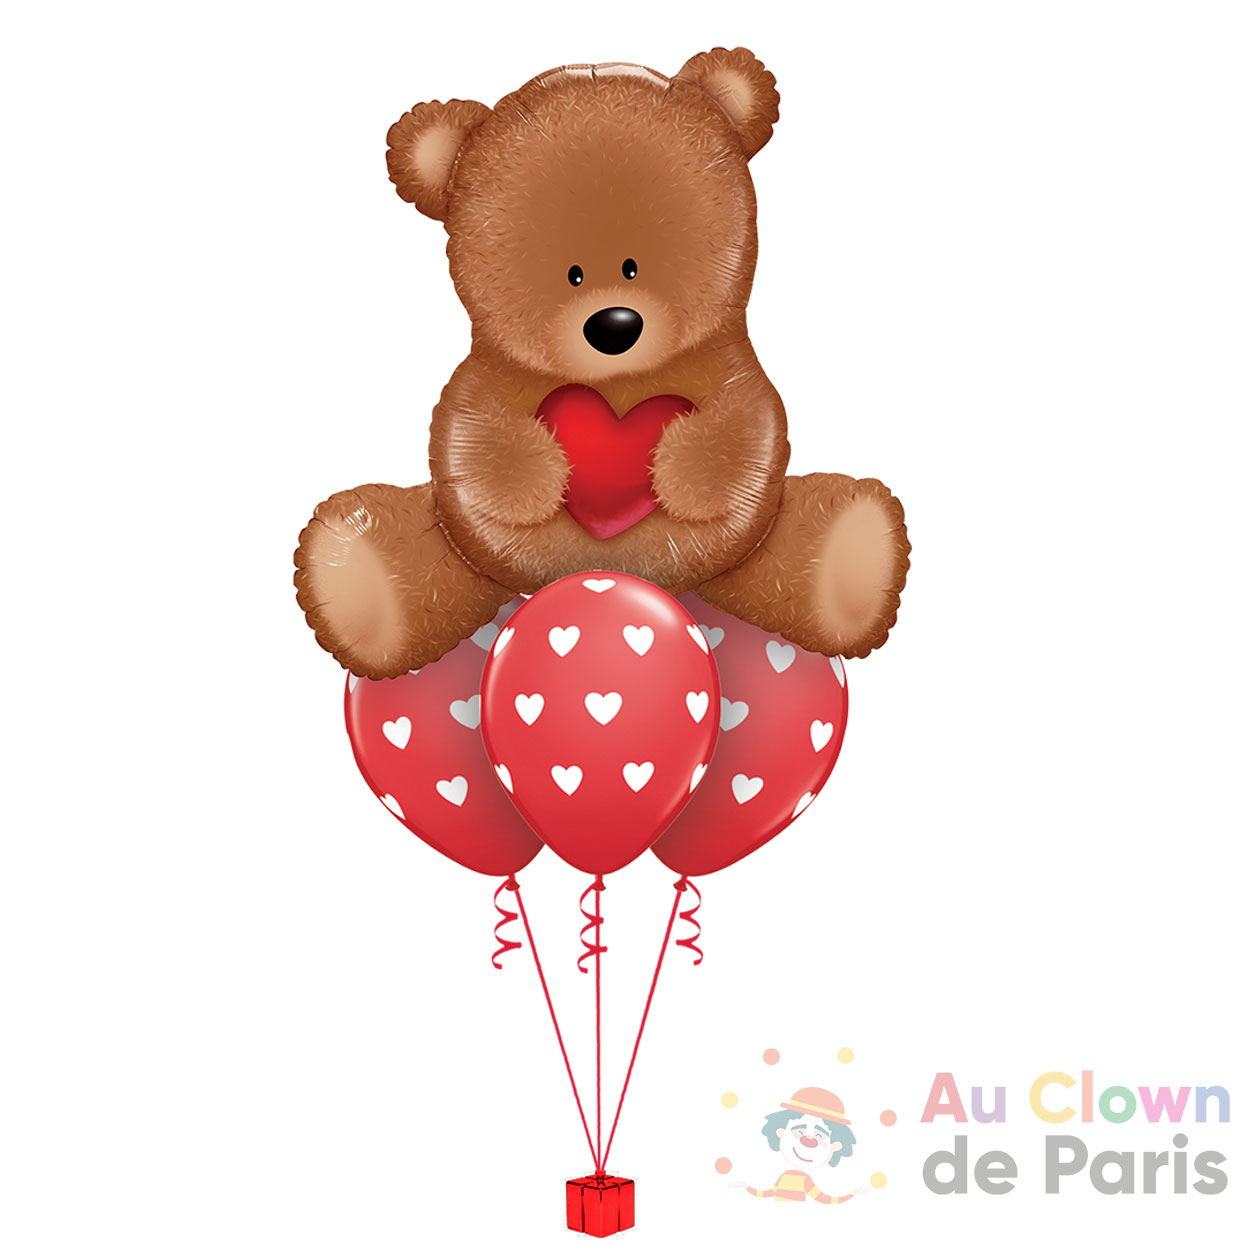 https://au-clown-de-paris.fr/wp-content/uploads/2021/01/bouquet-de-ballons-ours-amour.jpg